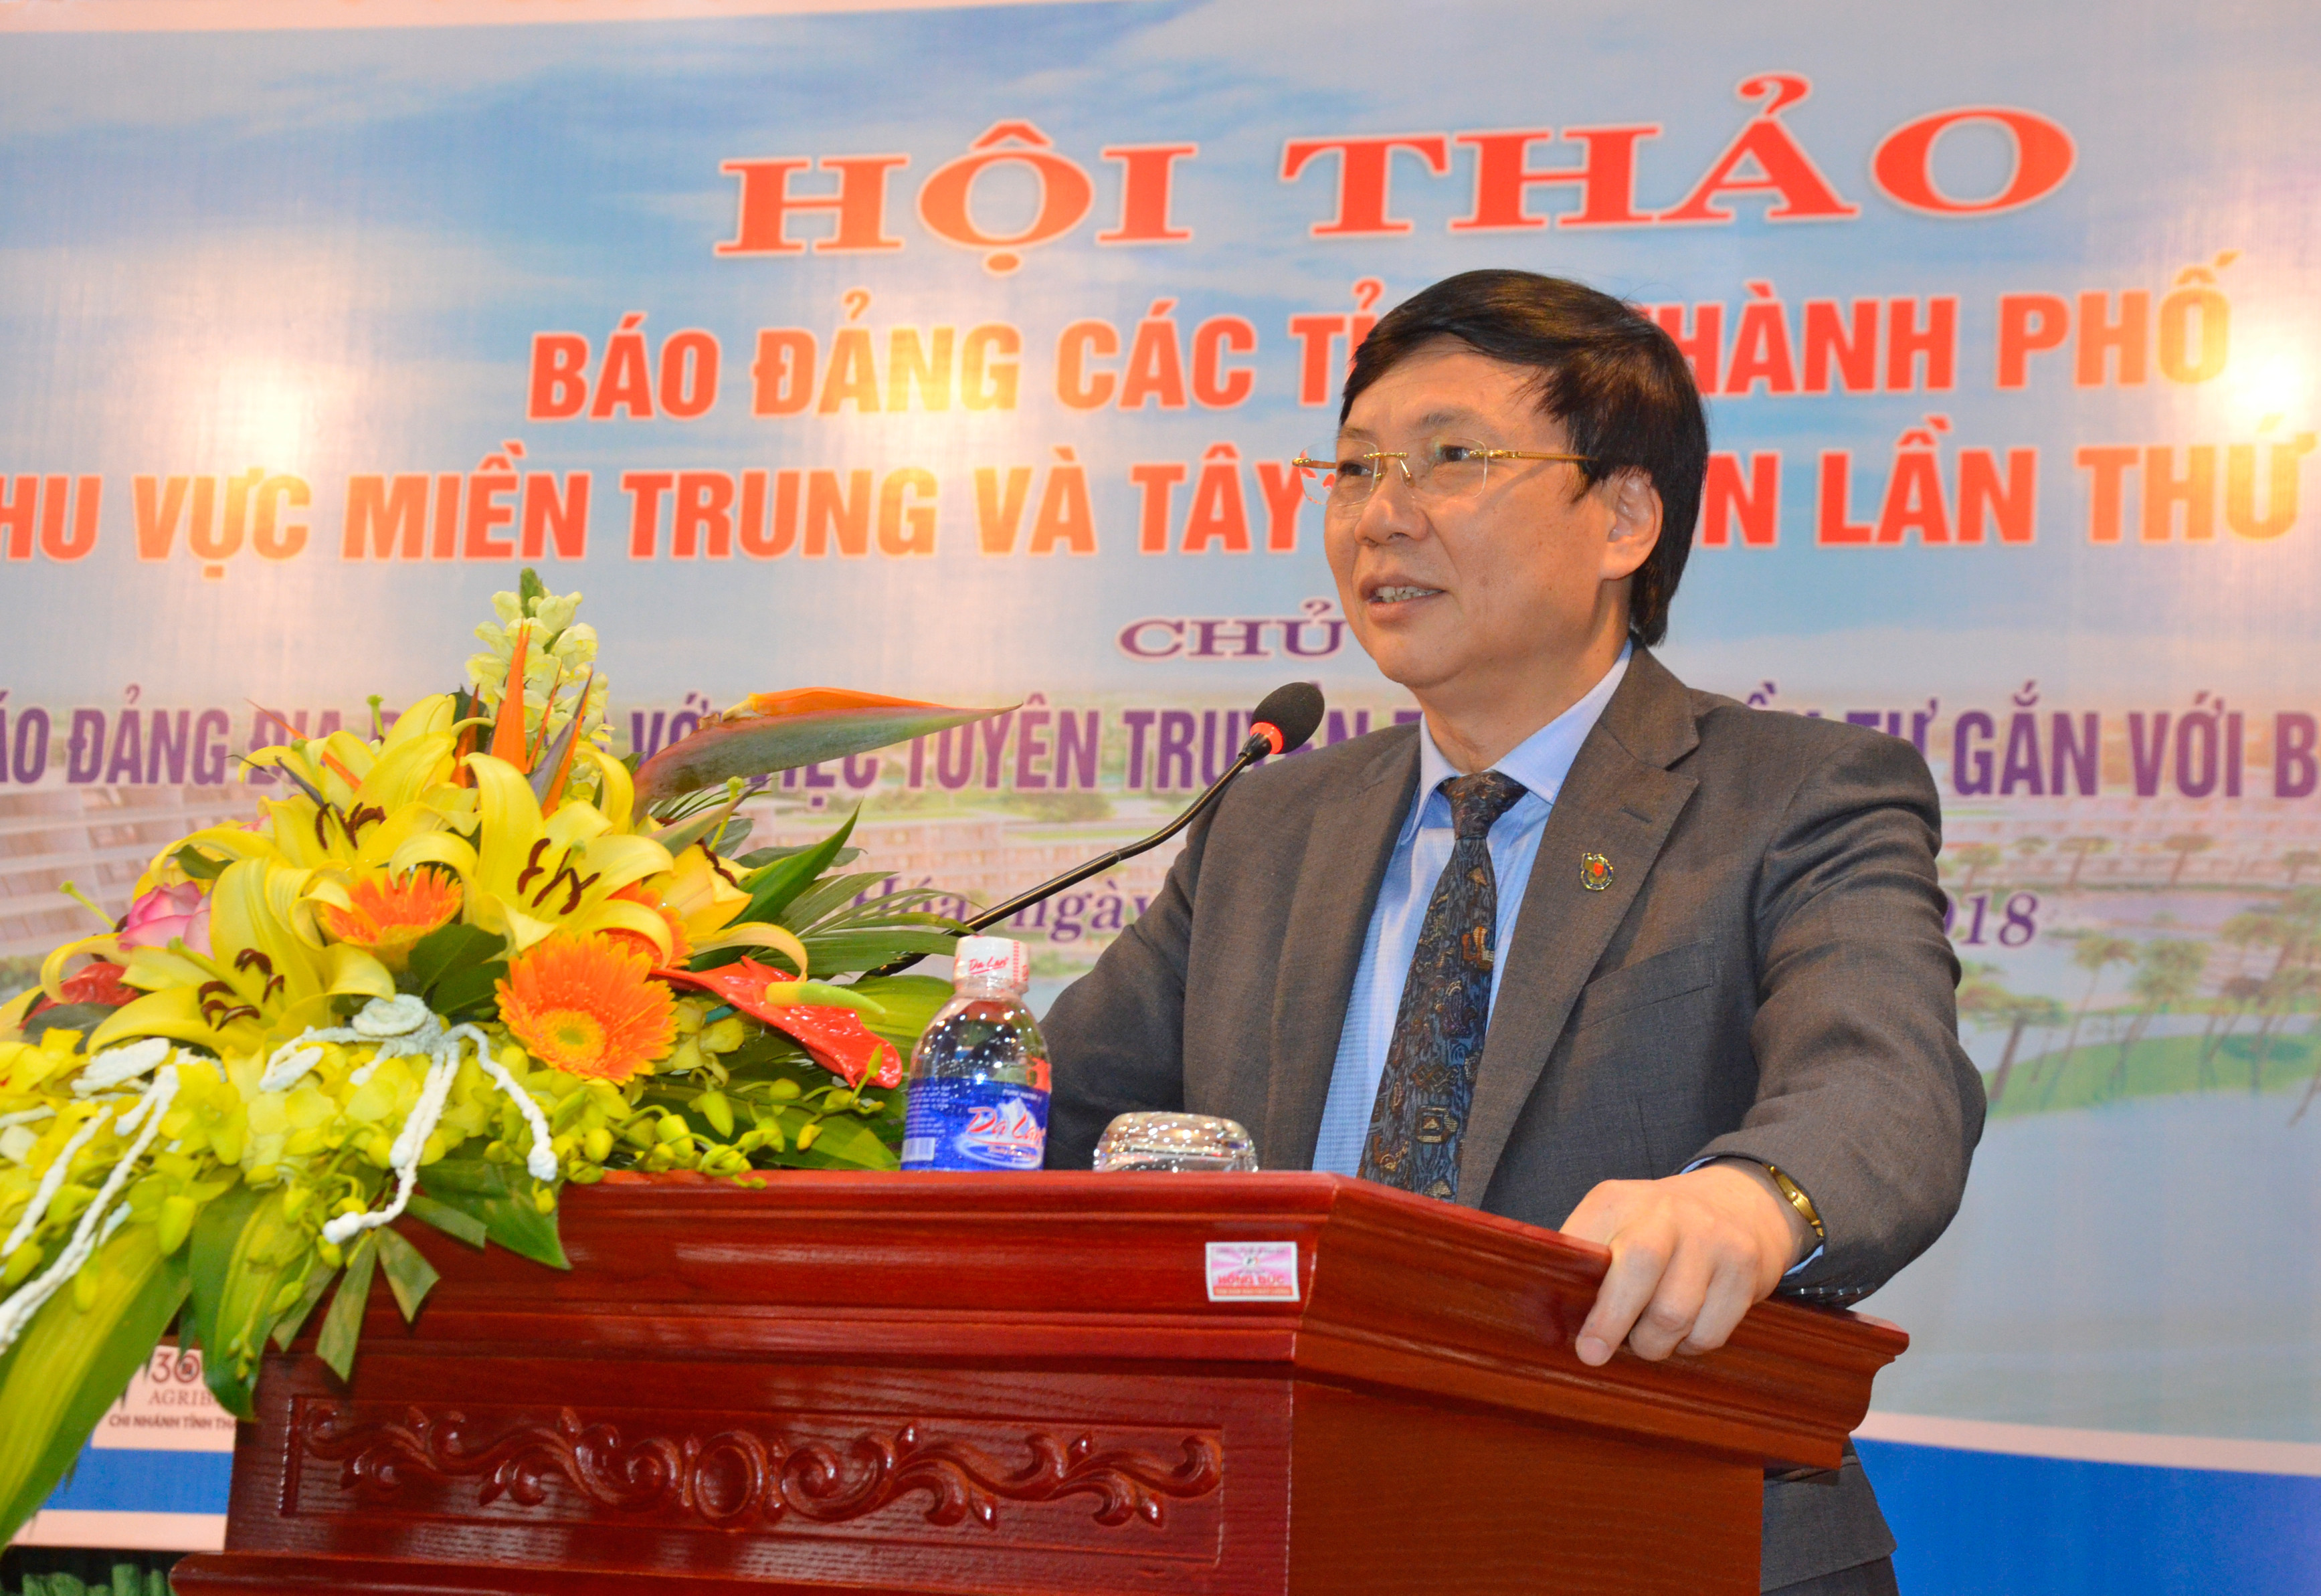 Đồng chí Hồ Quang Lợi- Phó Chủ tịch Thường trực Hội nhà báo Việt Nam phát biểu tại Hội thảo. Ảnh Thanh Lê